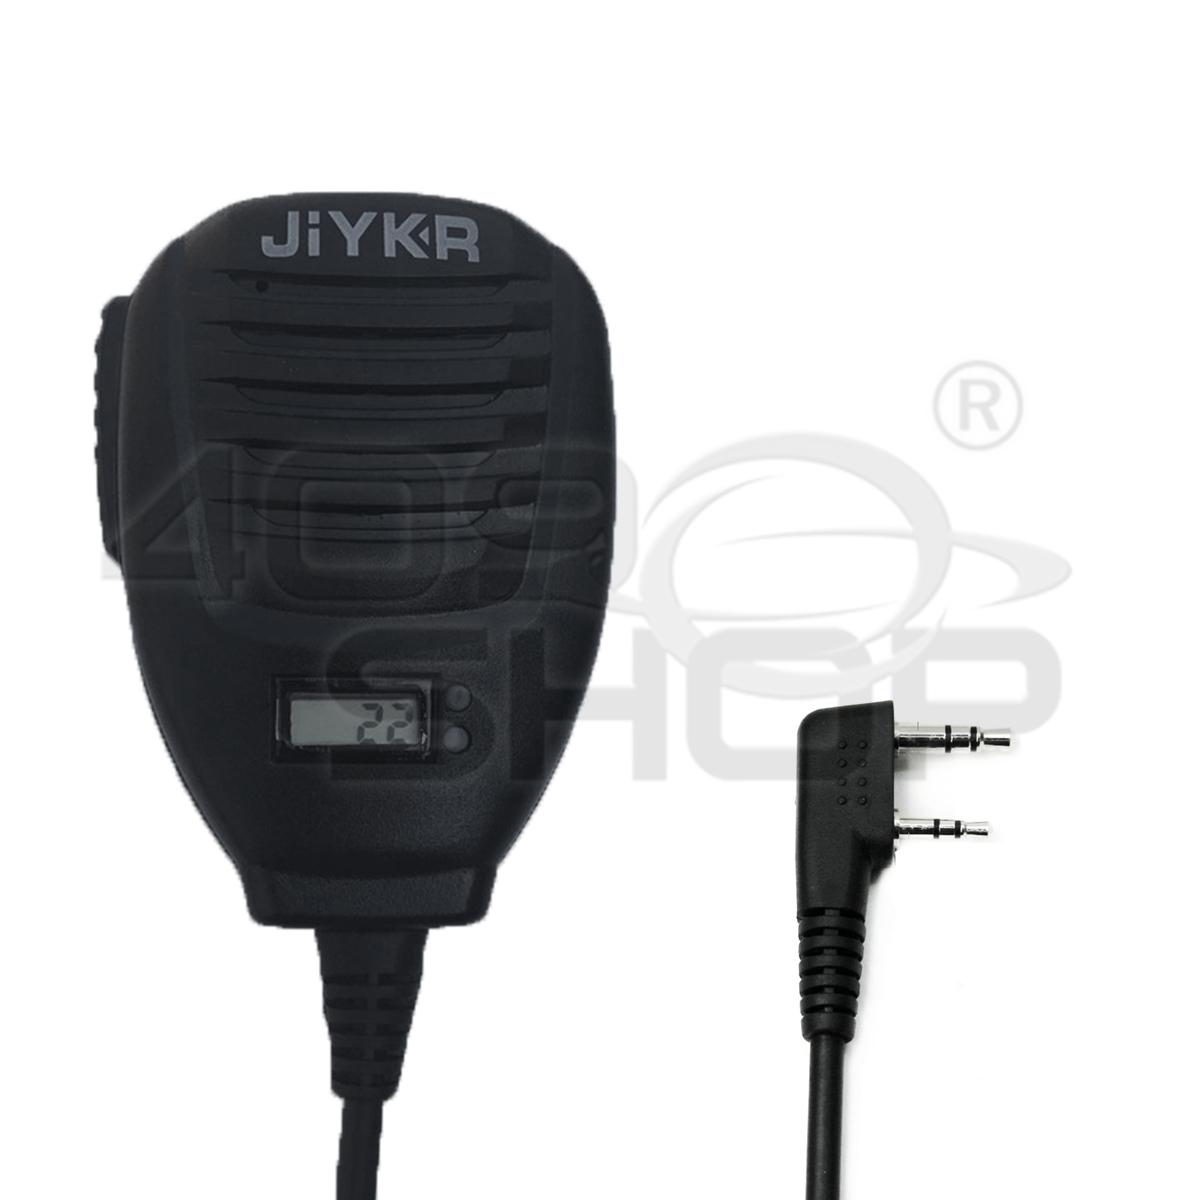 JIYKR PTT Speaker Microphone FOR KENWOOD BAOFENG walkie talkie